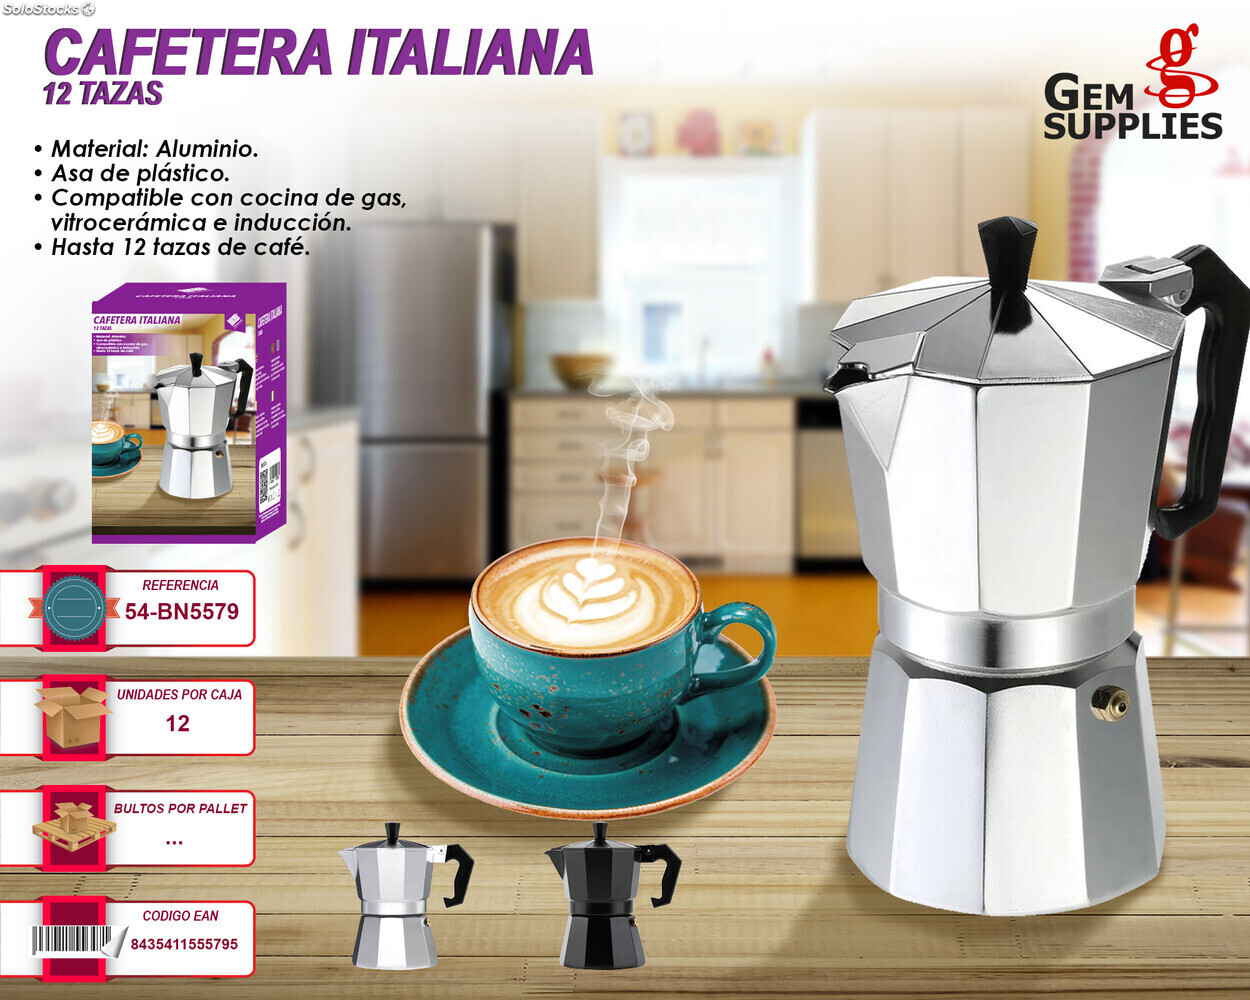 Cafetera Italiana Inducción 12 Tazas Café, Aluminio, Válvula de